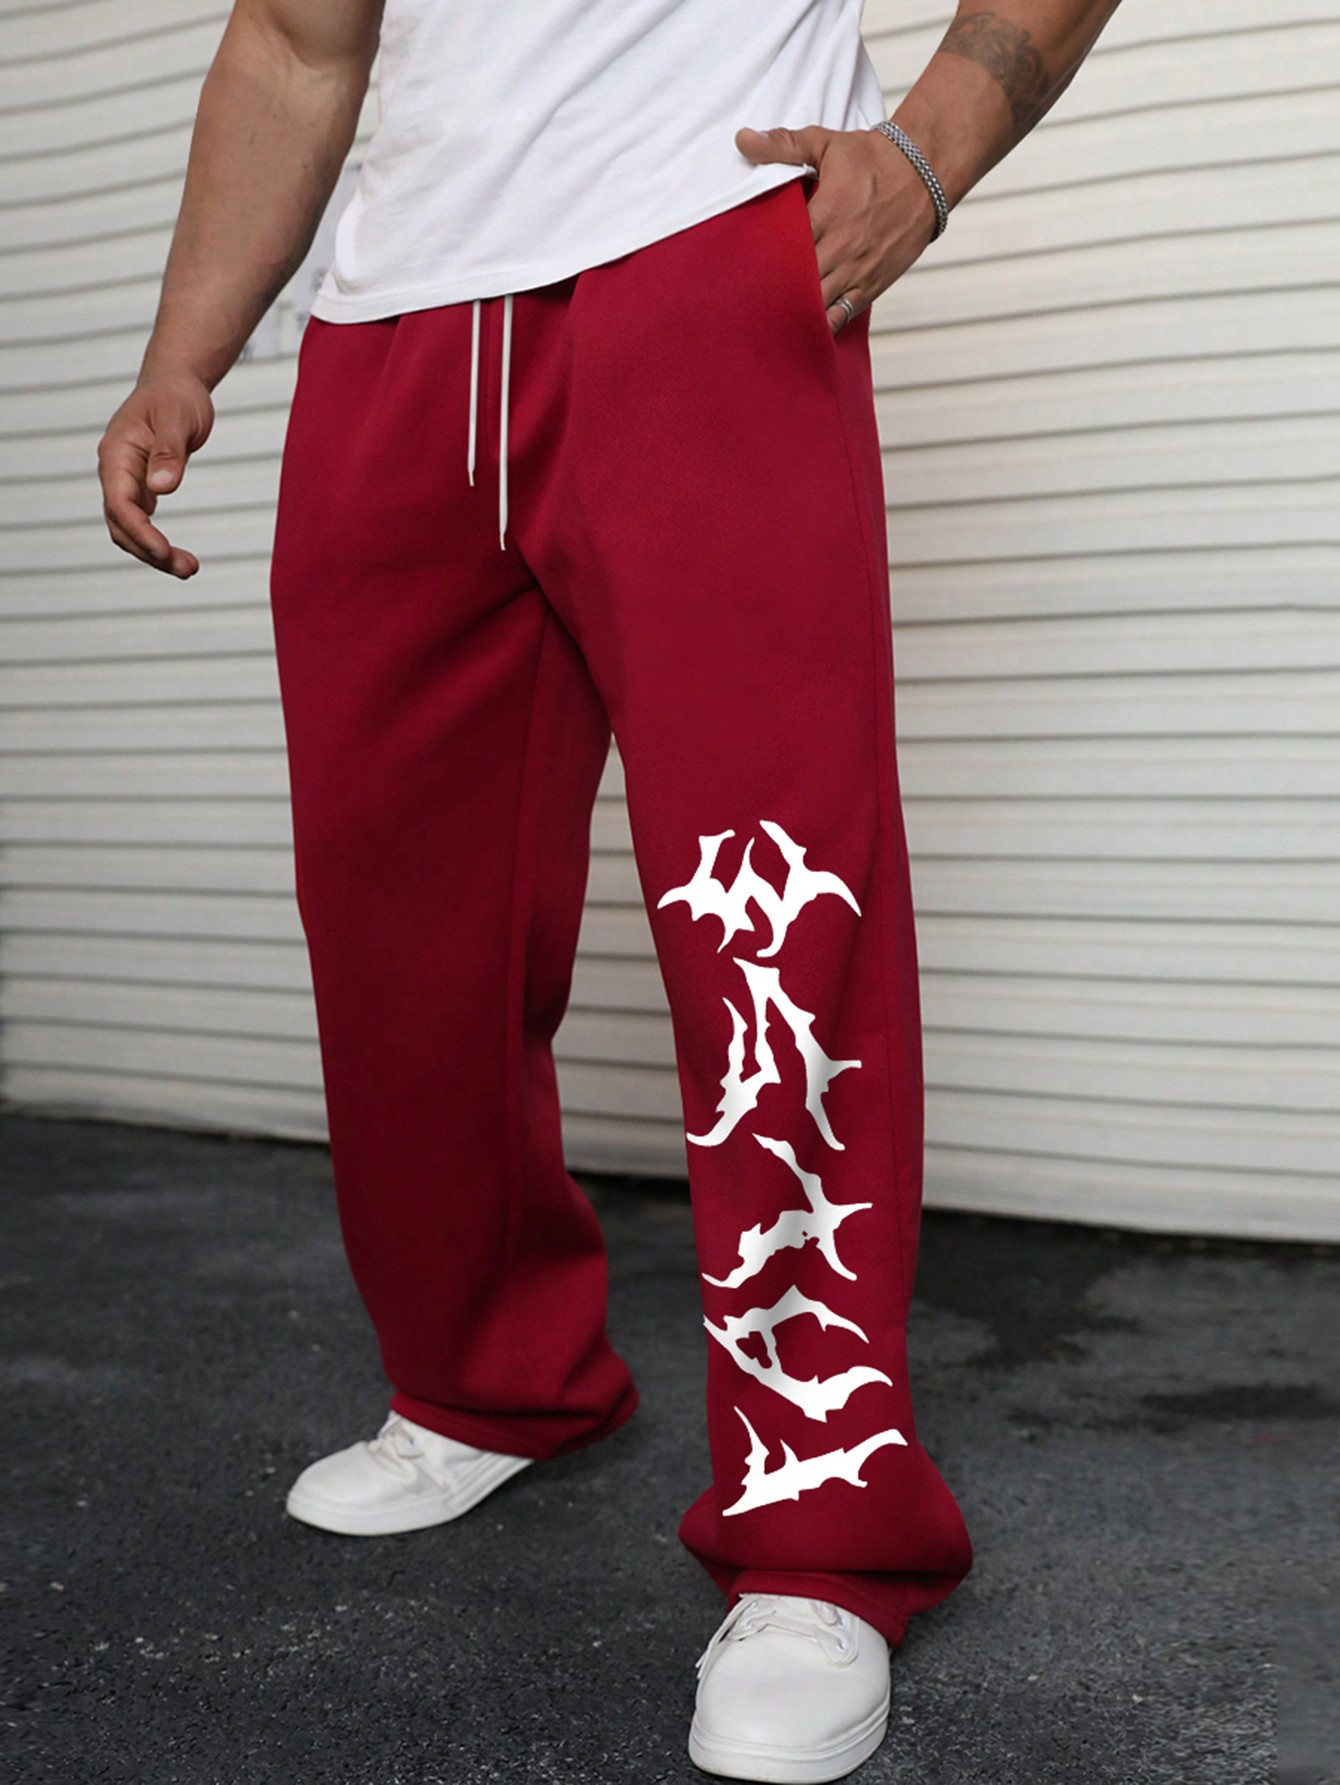 Мужские спортивные штаны больших размеров Manfinity EMRG с эластичной резинкой на талии и наклонными карманами больших размеров, бургундия